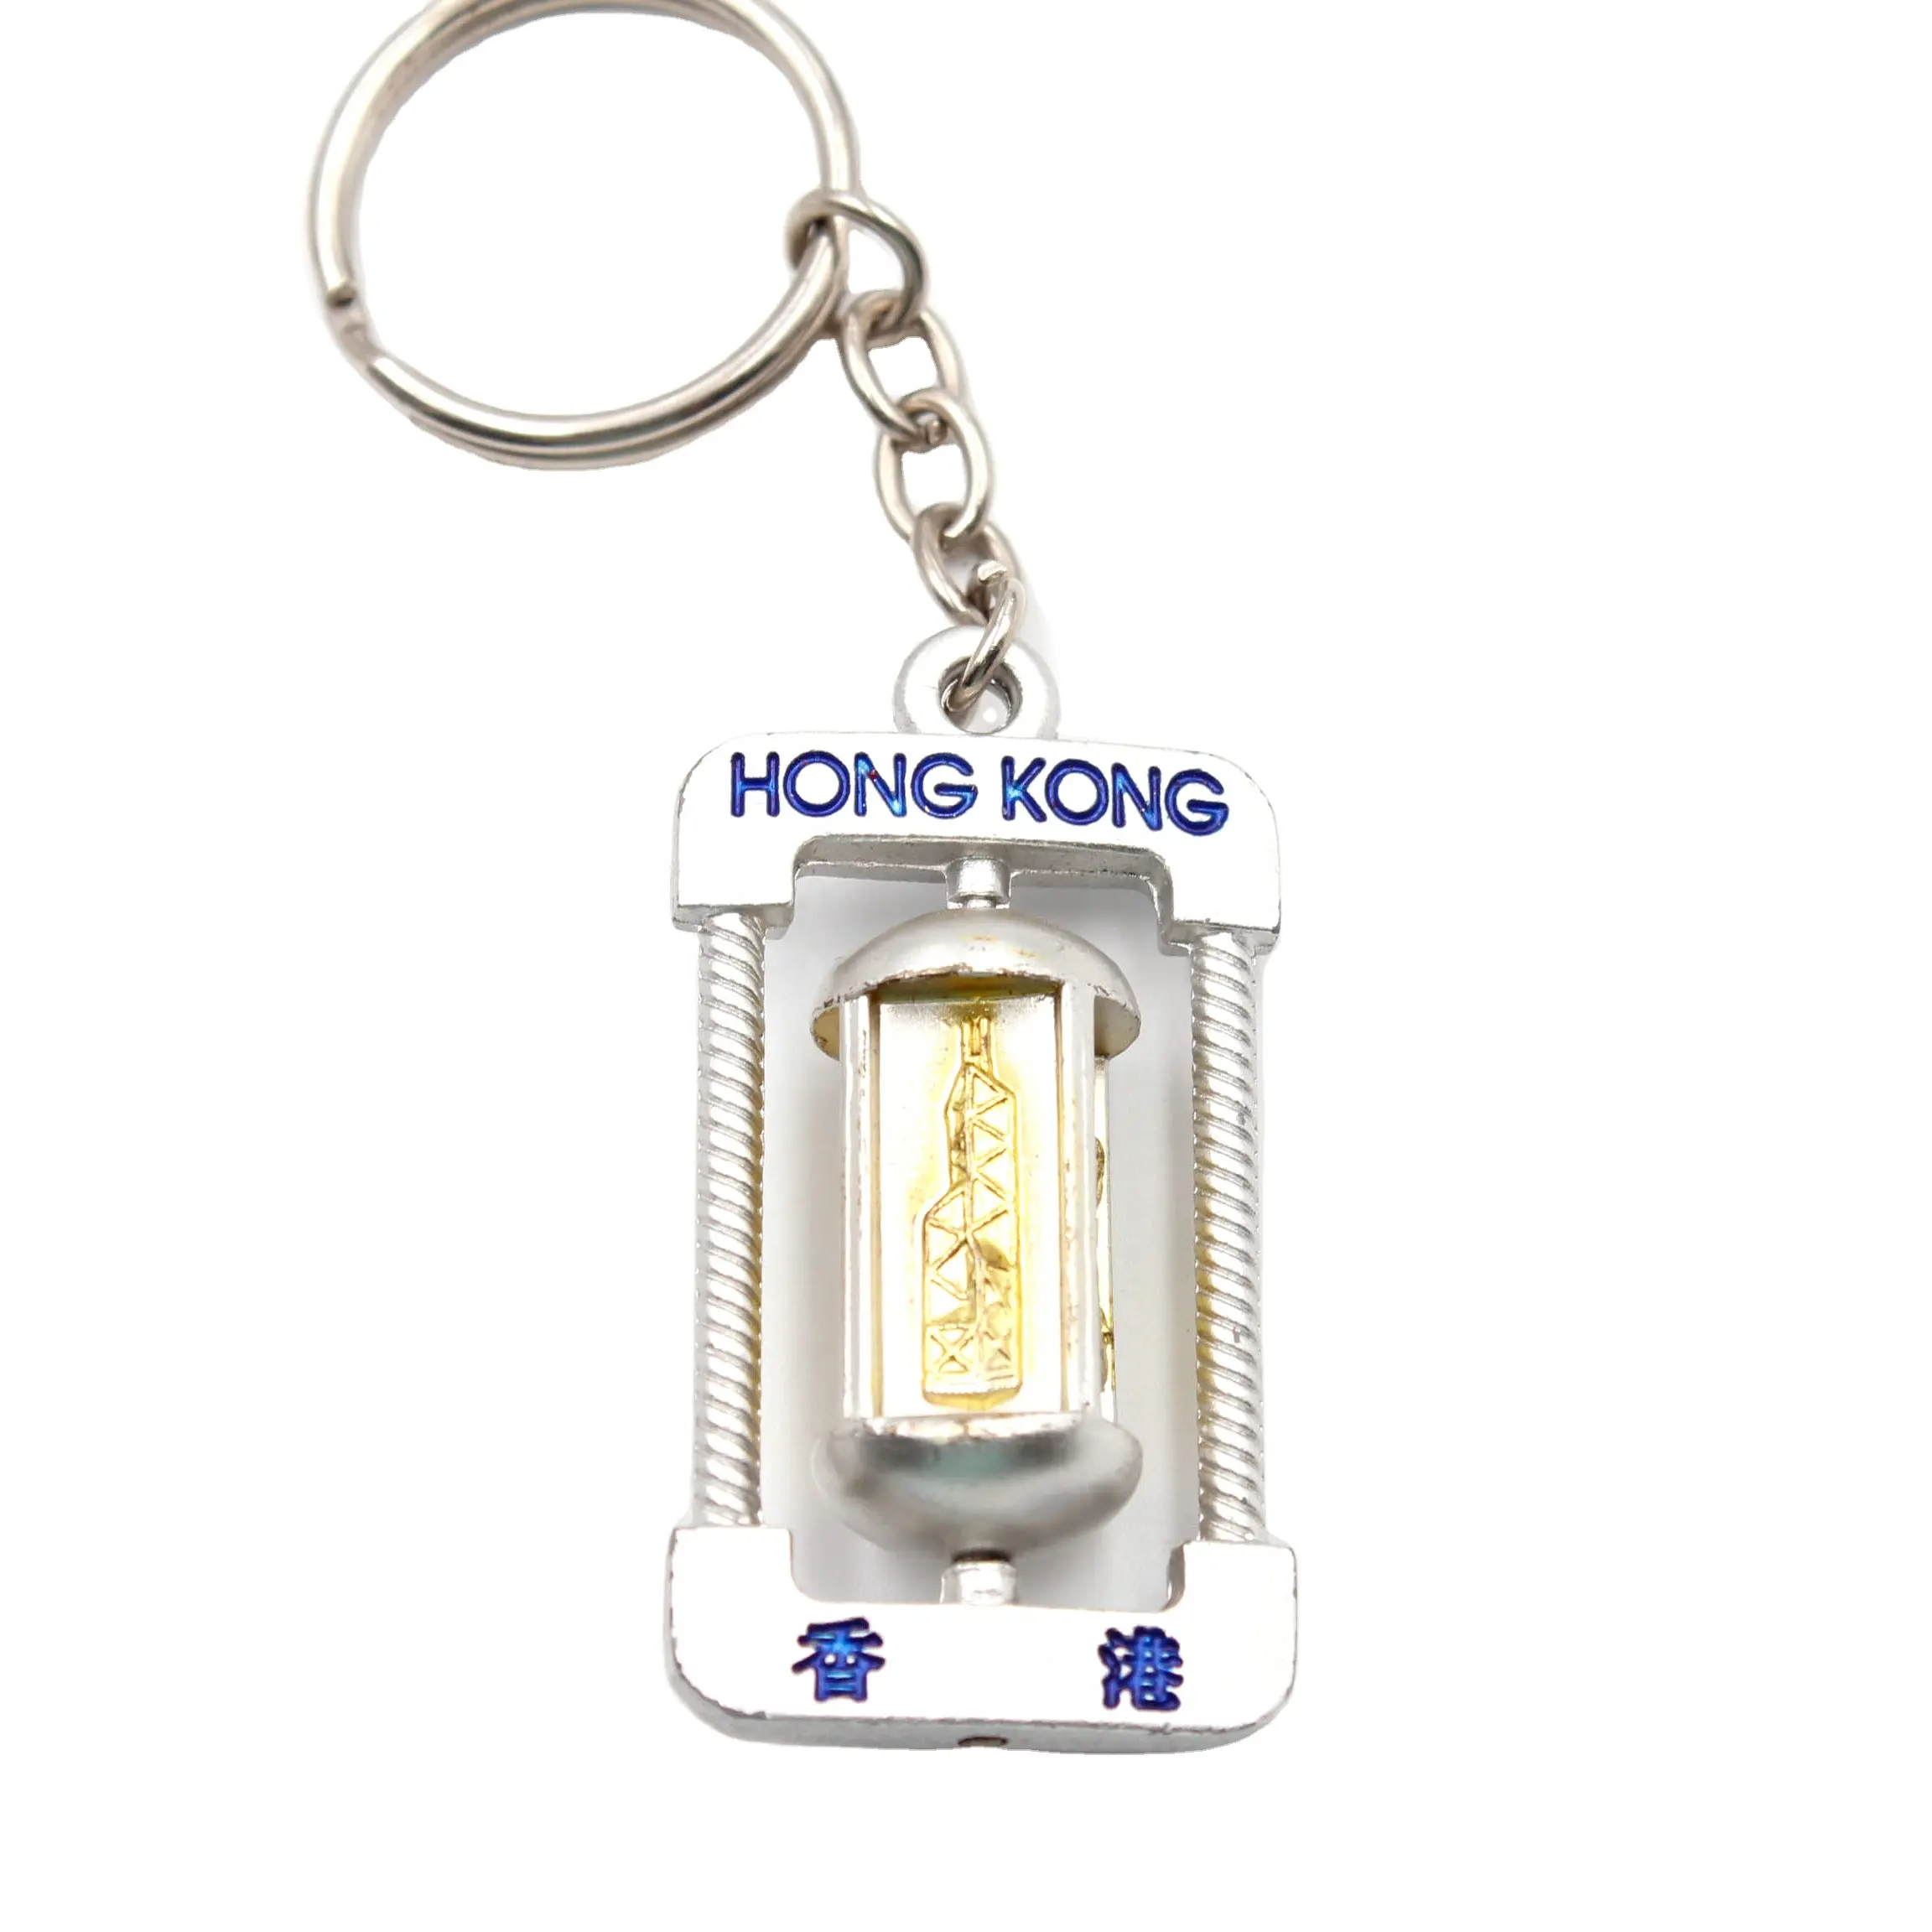 사용자 정의 3D 금속 회전 키 체인 이중 직사각형 회전 키 체인 홍콩 도시 건물 기념품 열쇠 고리 홍콩 선물